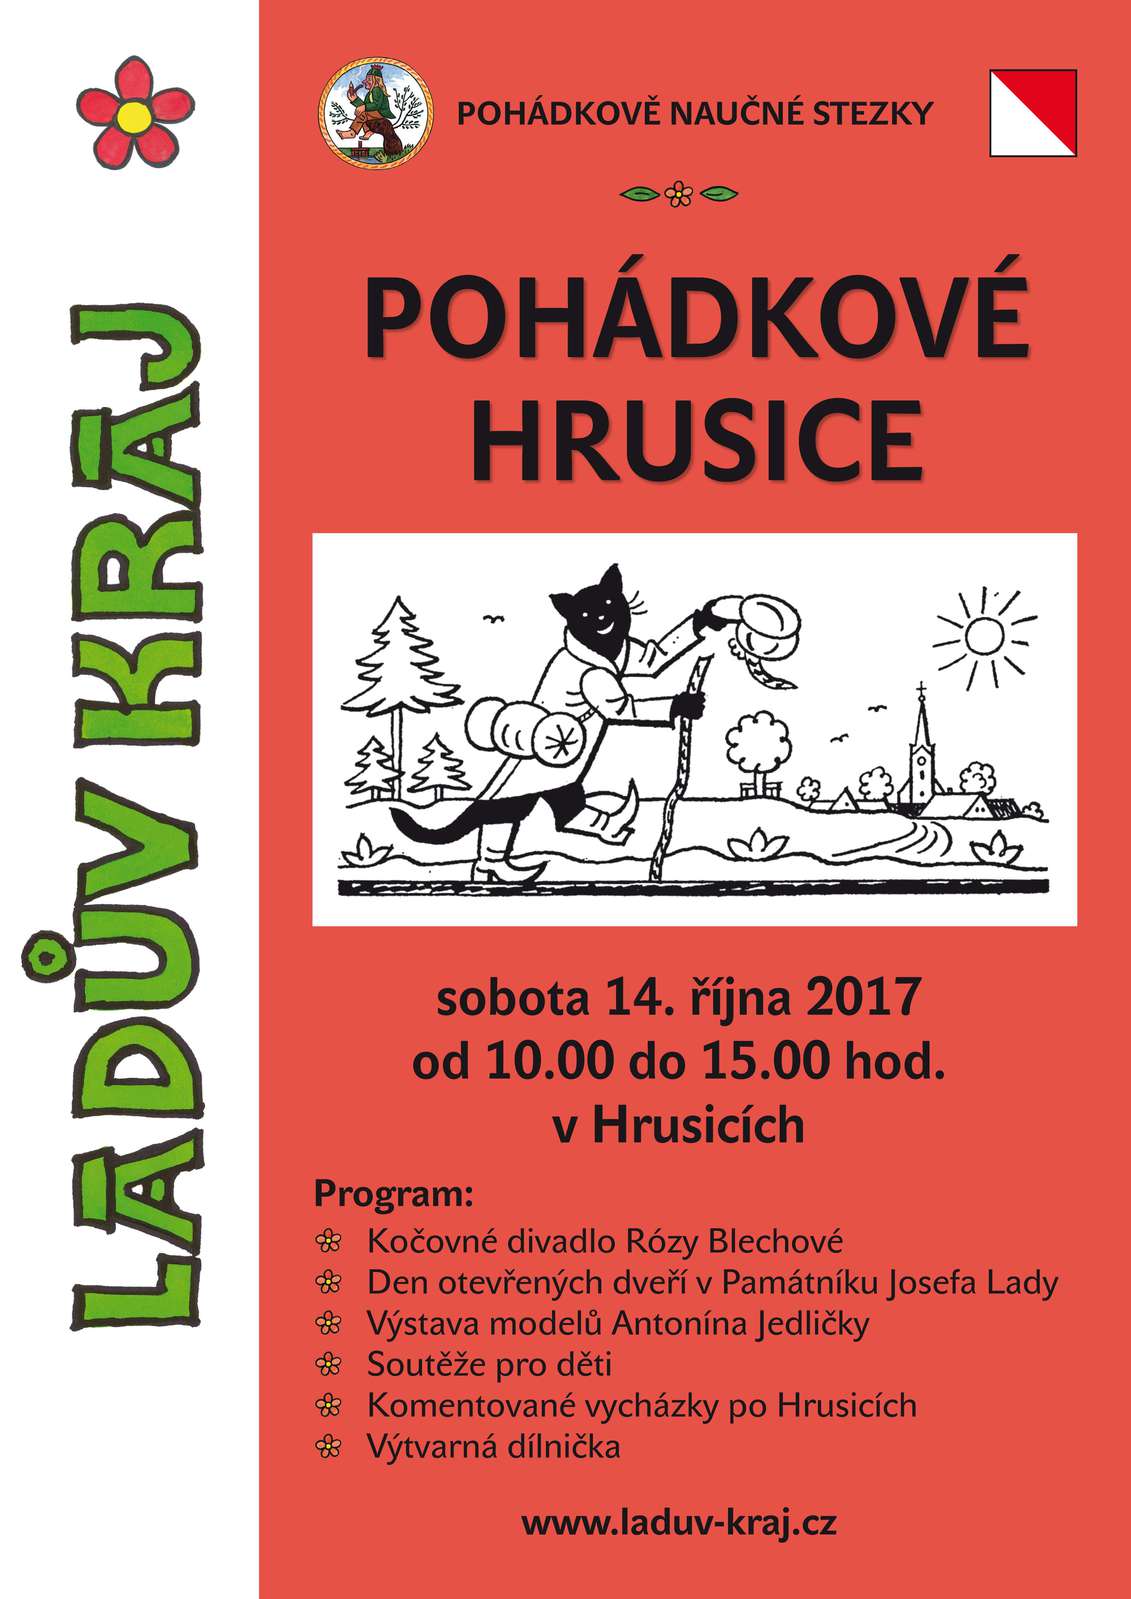 Pohádkové Hrusice 2017.JPG